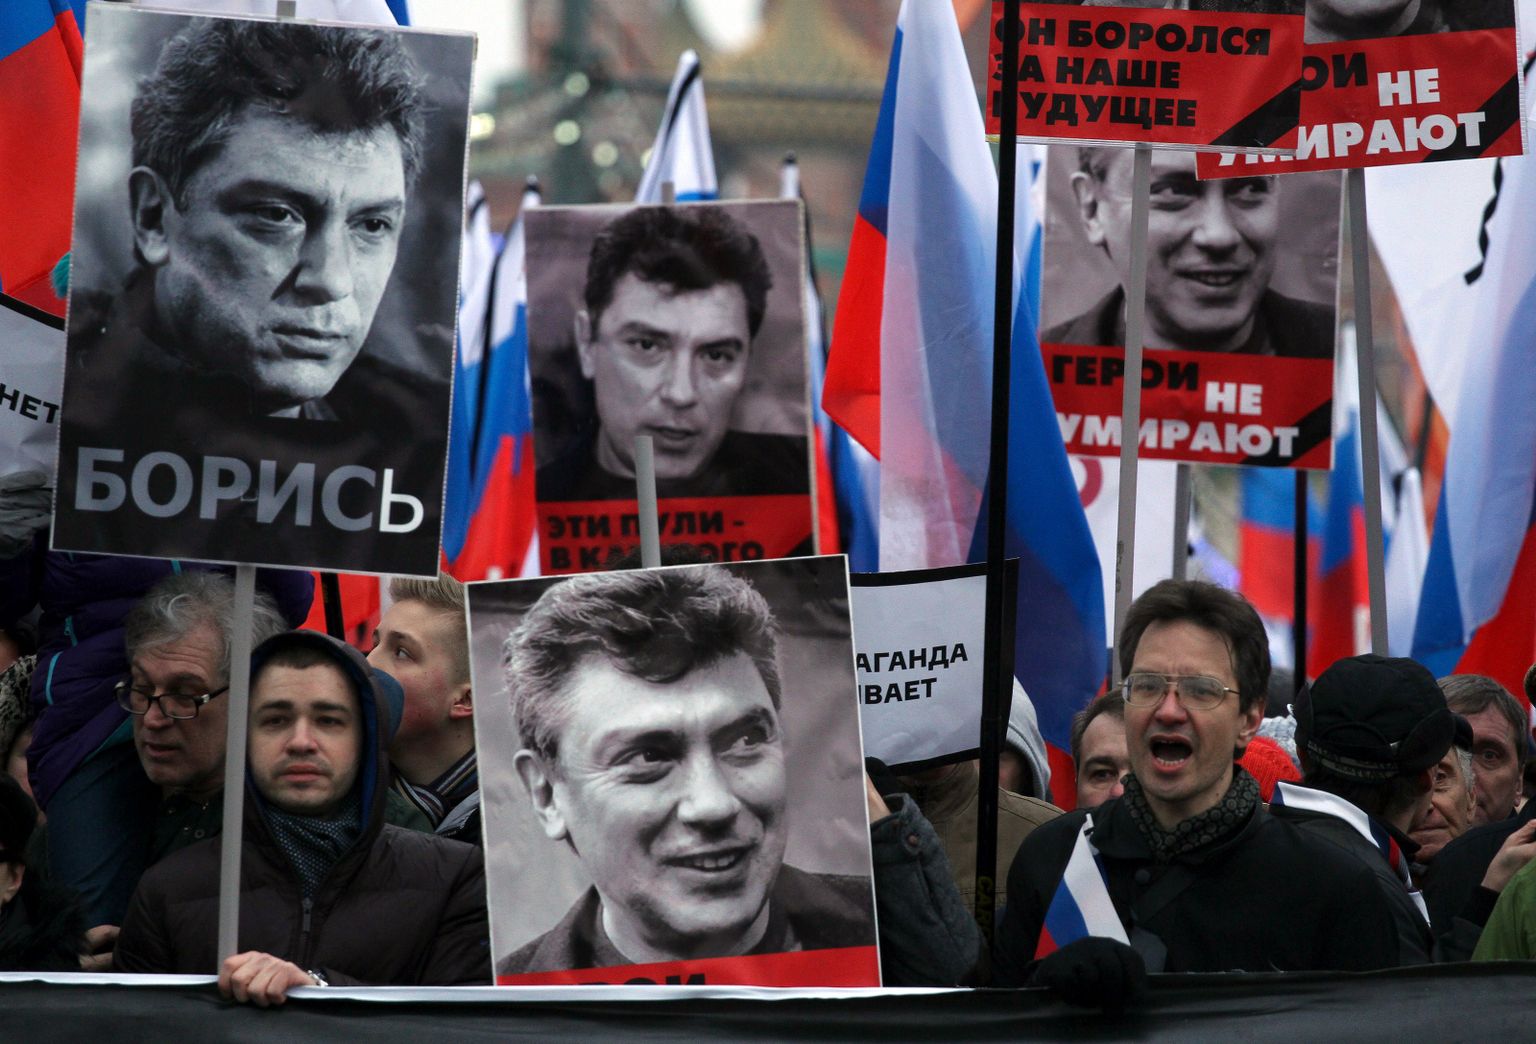 Vene opositsionäärid mõrvatud Boriss Nemtsovi plakatitega 1. märtsil 2015. aastal Moskvas. Nemtsov mõrvati sama aasta 27. märtsil sillal Kremli lähistel.